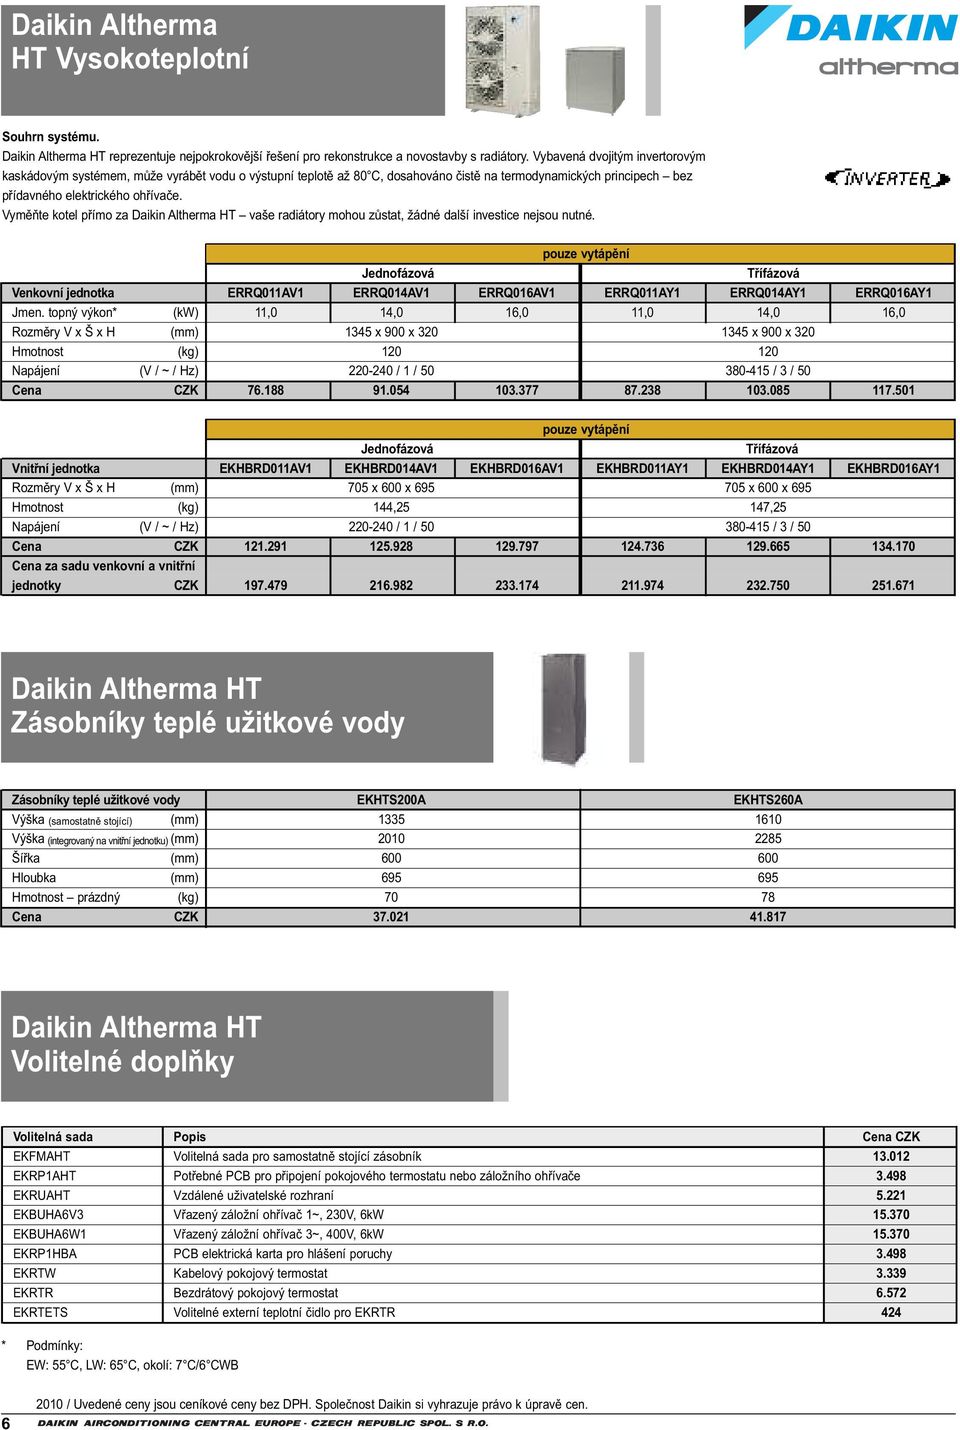 Vyměňte kotel přímo za Daikin Altherma HT vaše radiátory mohou zůstat, žádné další investice nejsou nutné. Jednofázová Třífázová Venkovní jednotka Jmen.